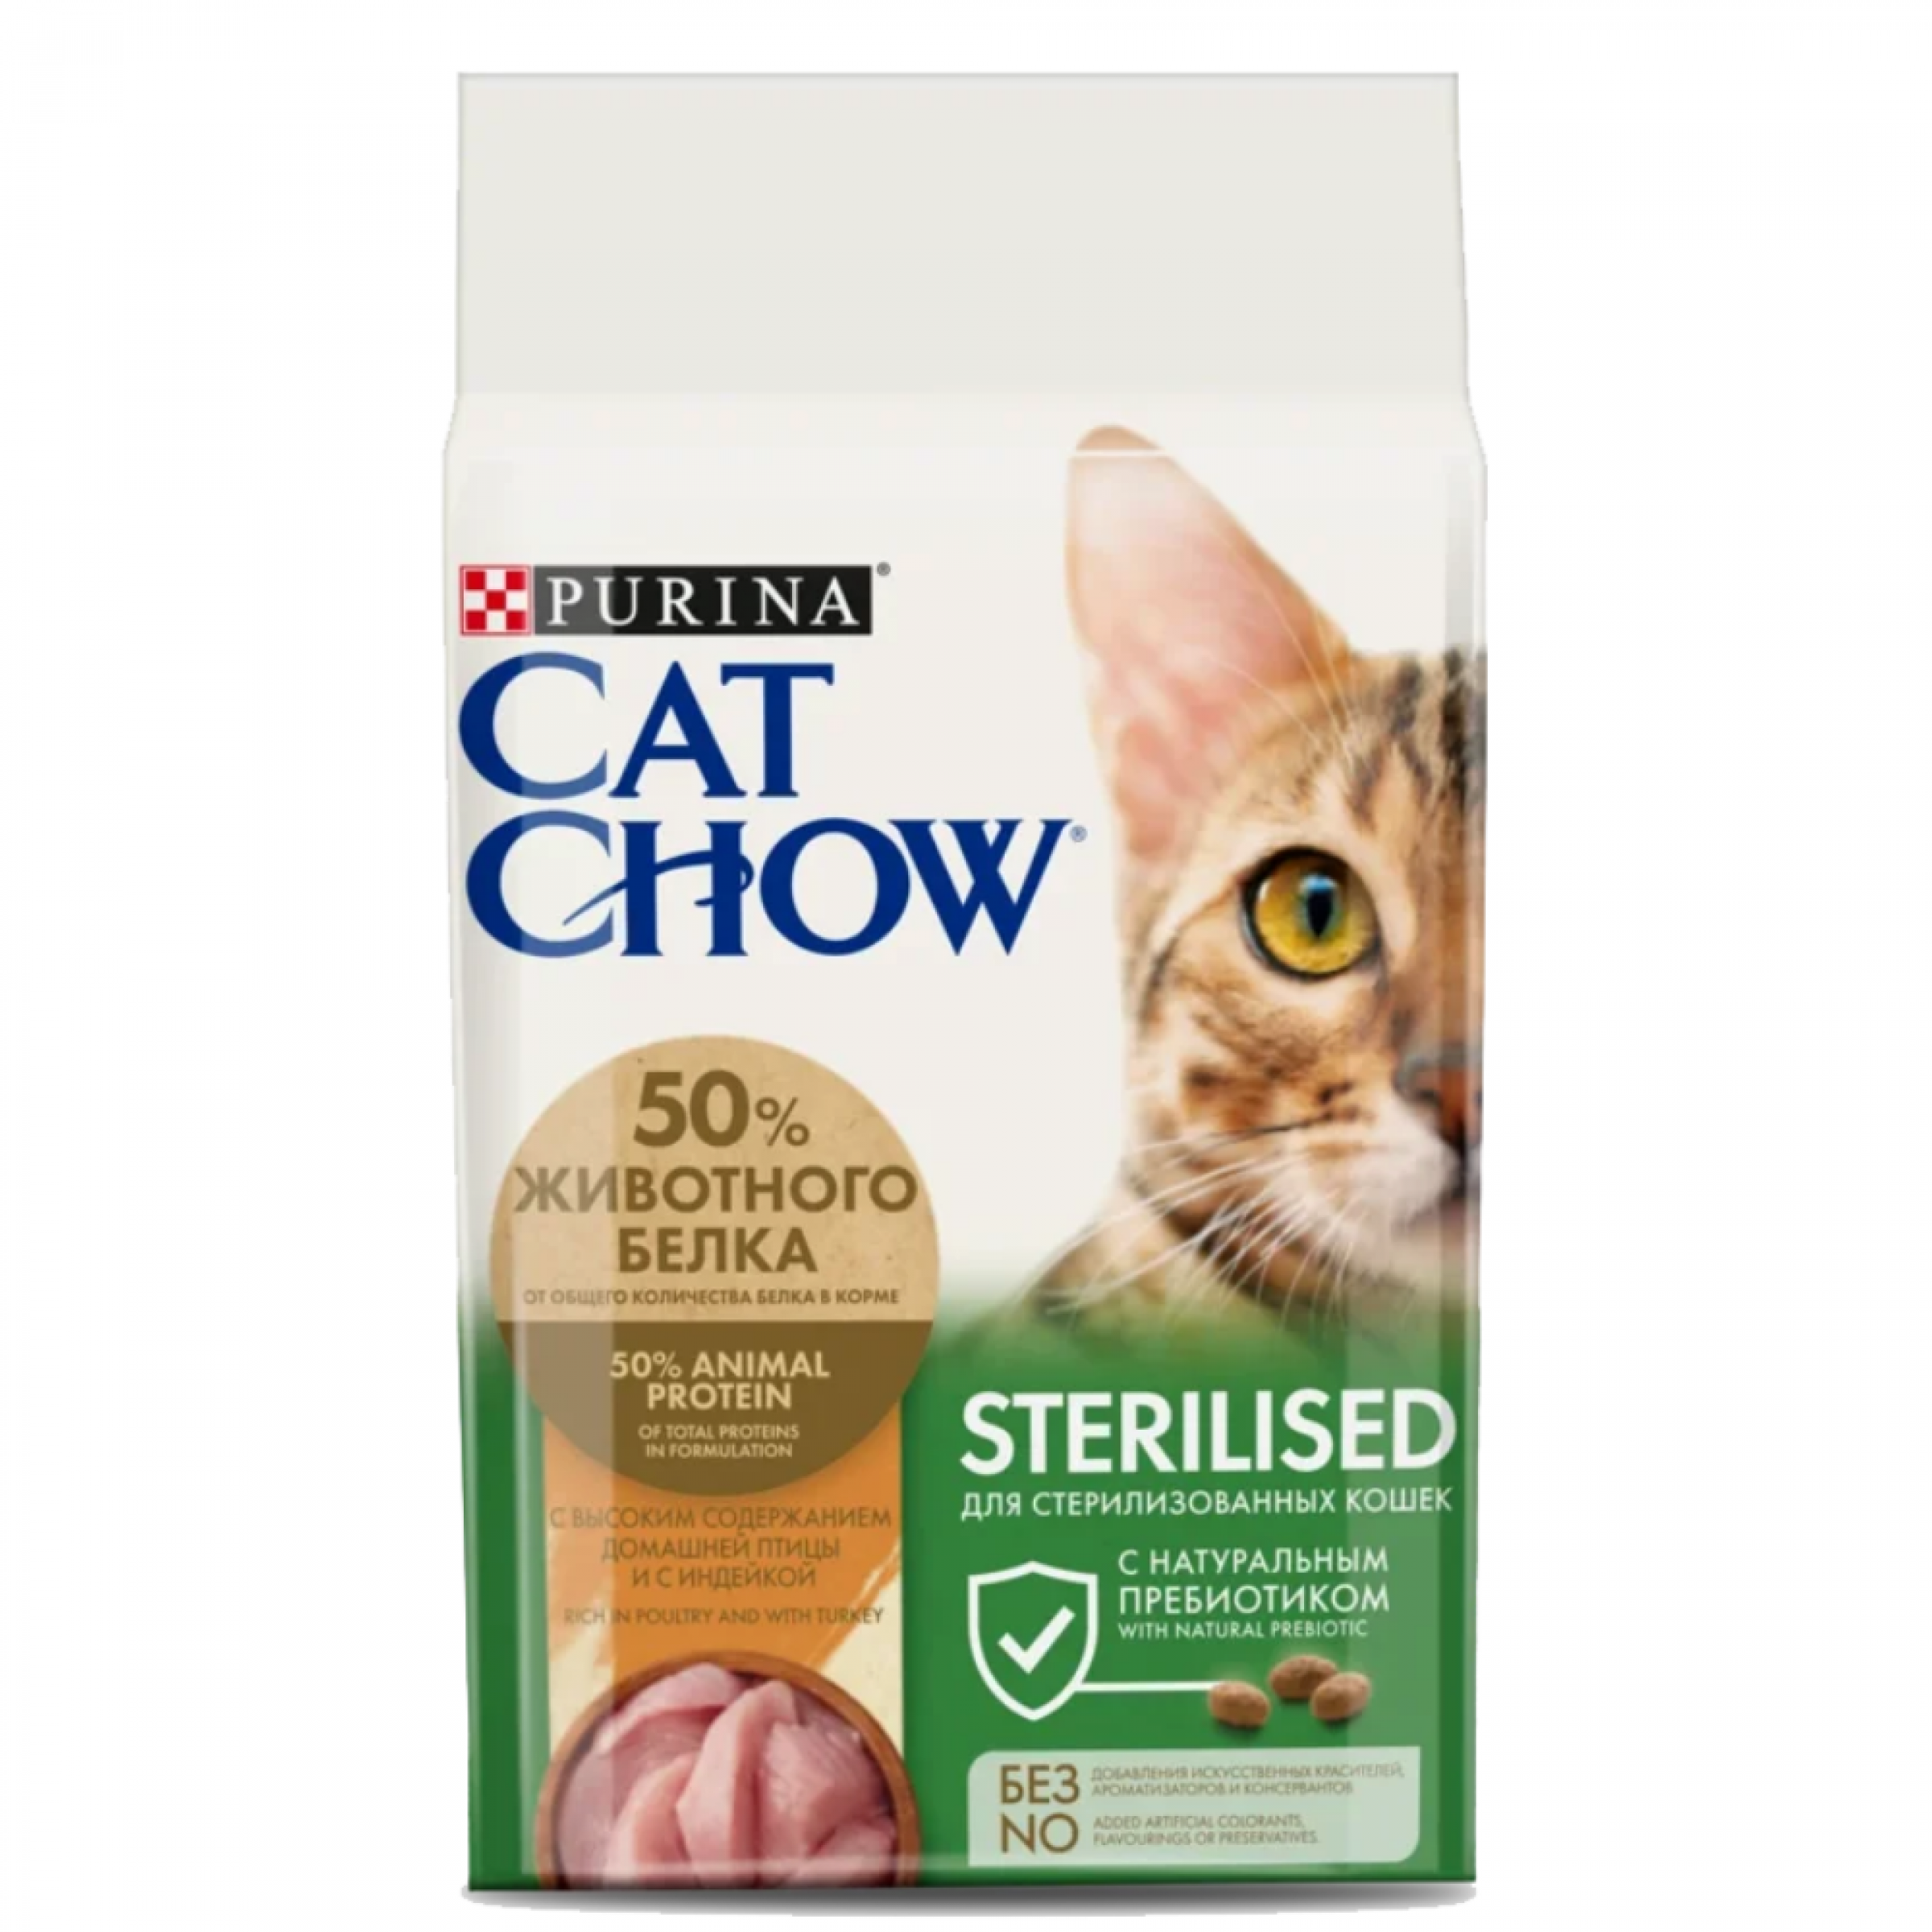 Сухой корм Purina Cat Chow Sterilised для стерилизованных кошек и кастрированных котов, 7 кг